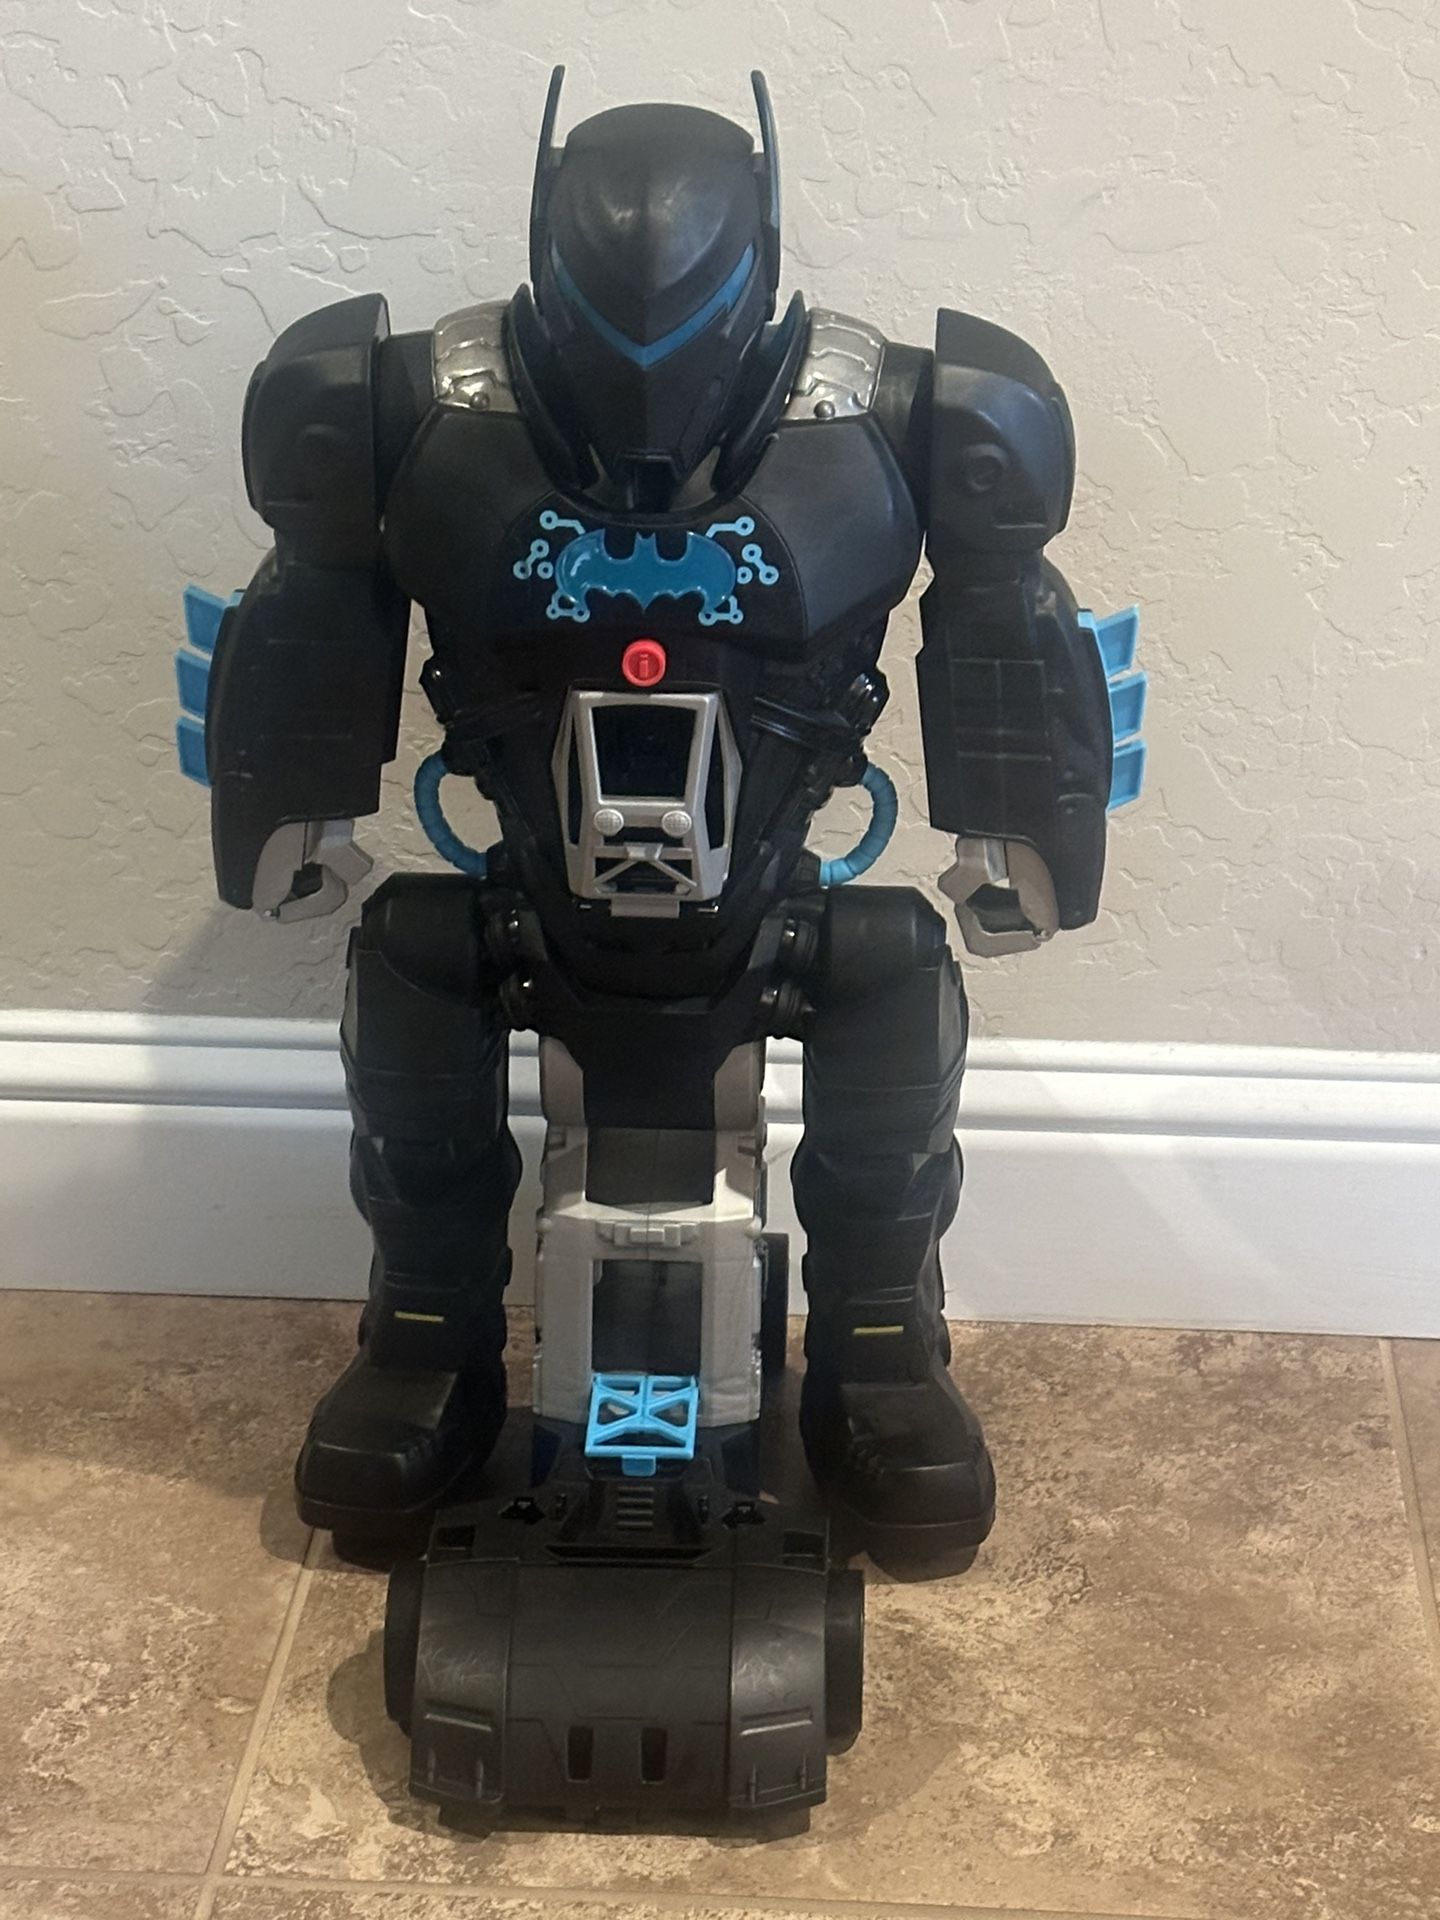 Batman Robot Toy